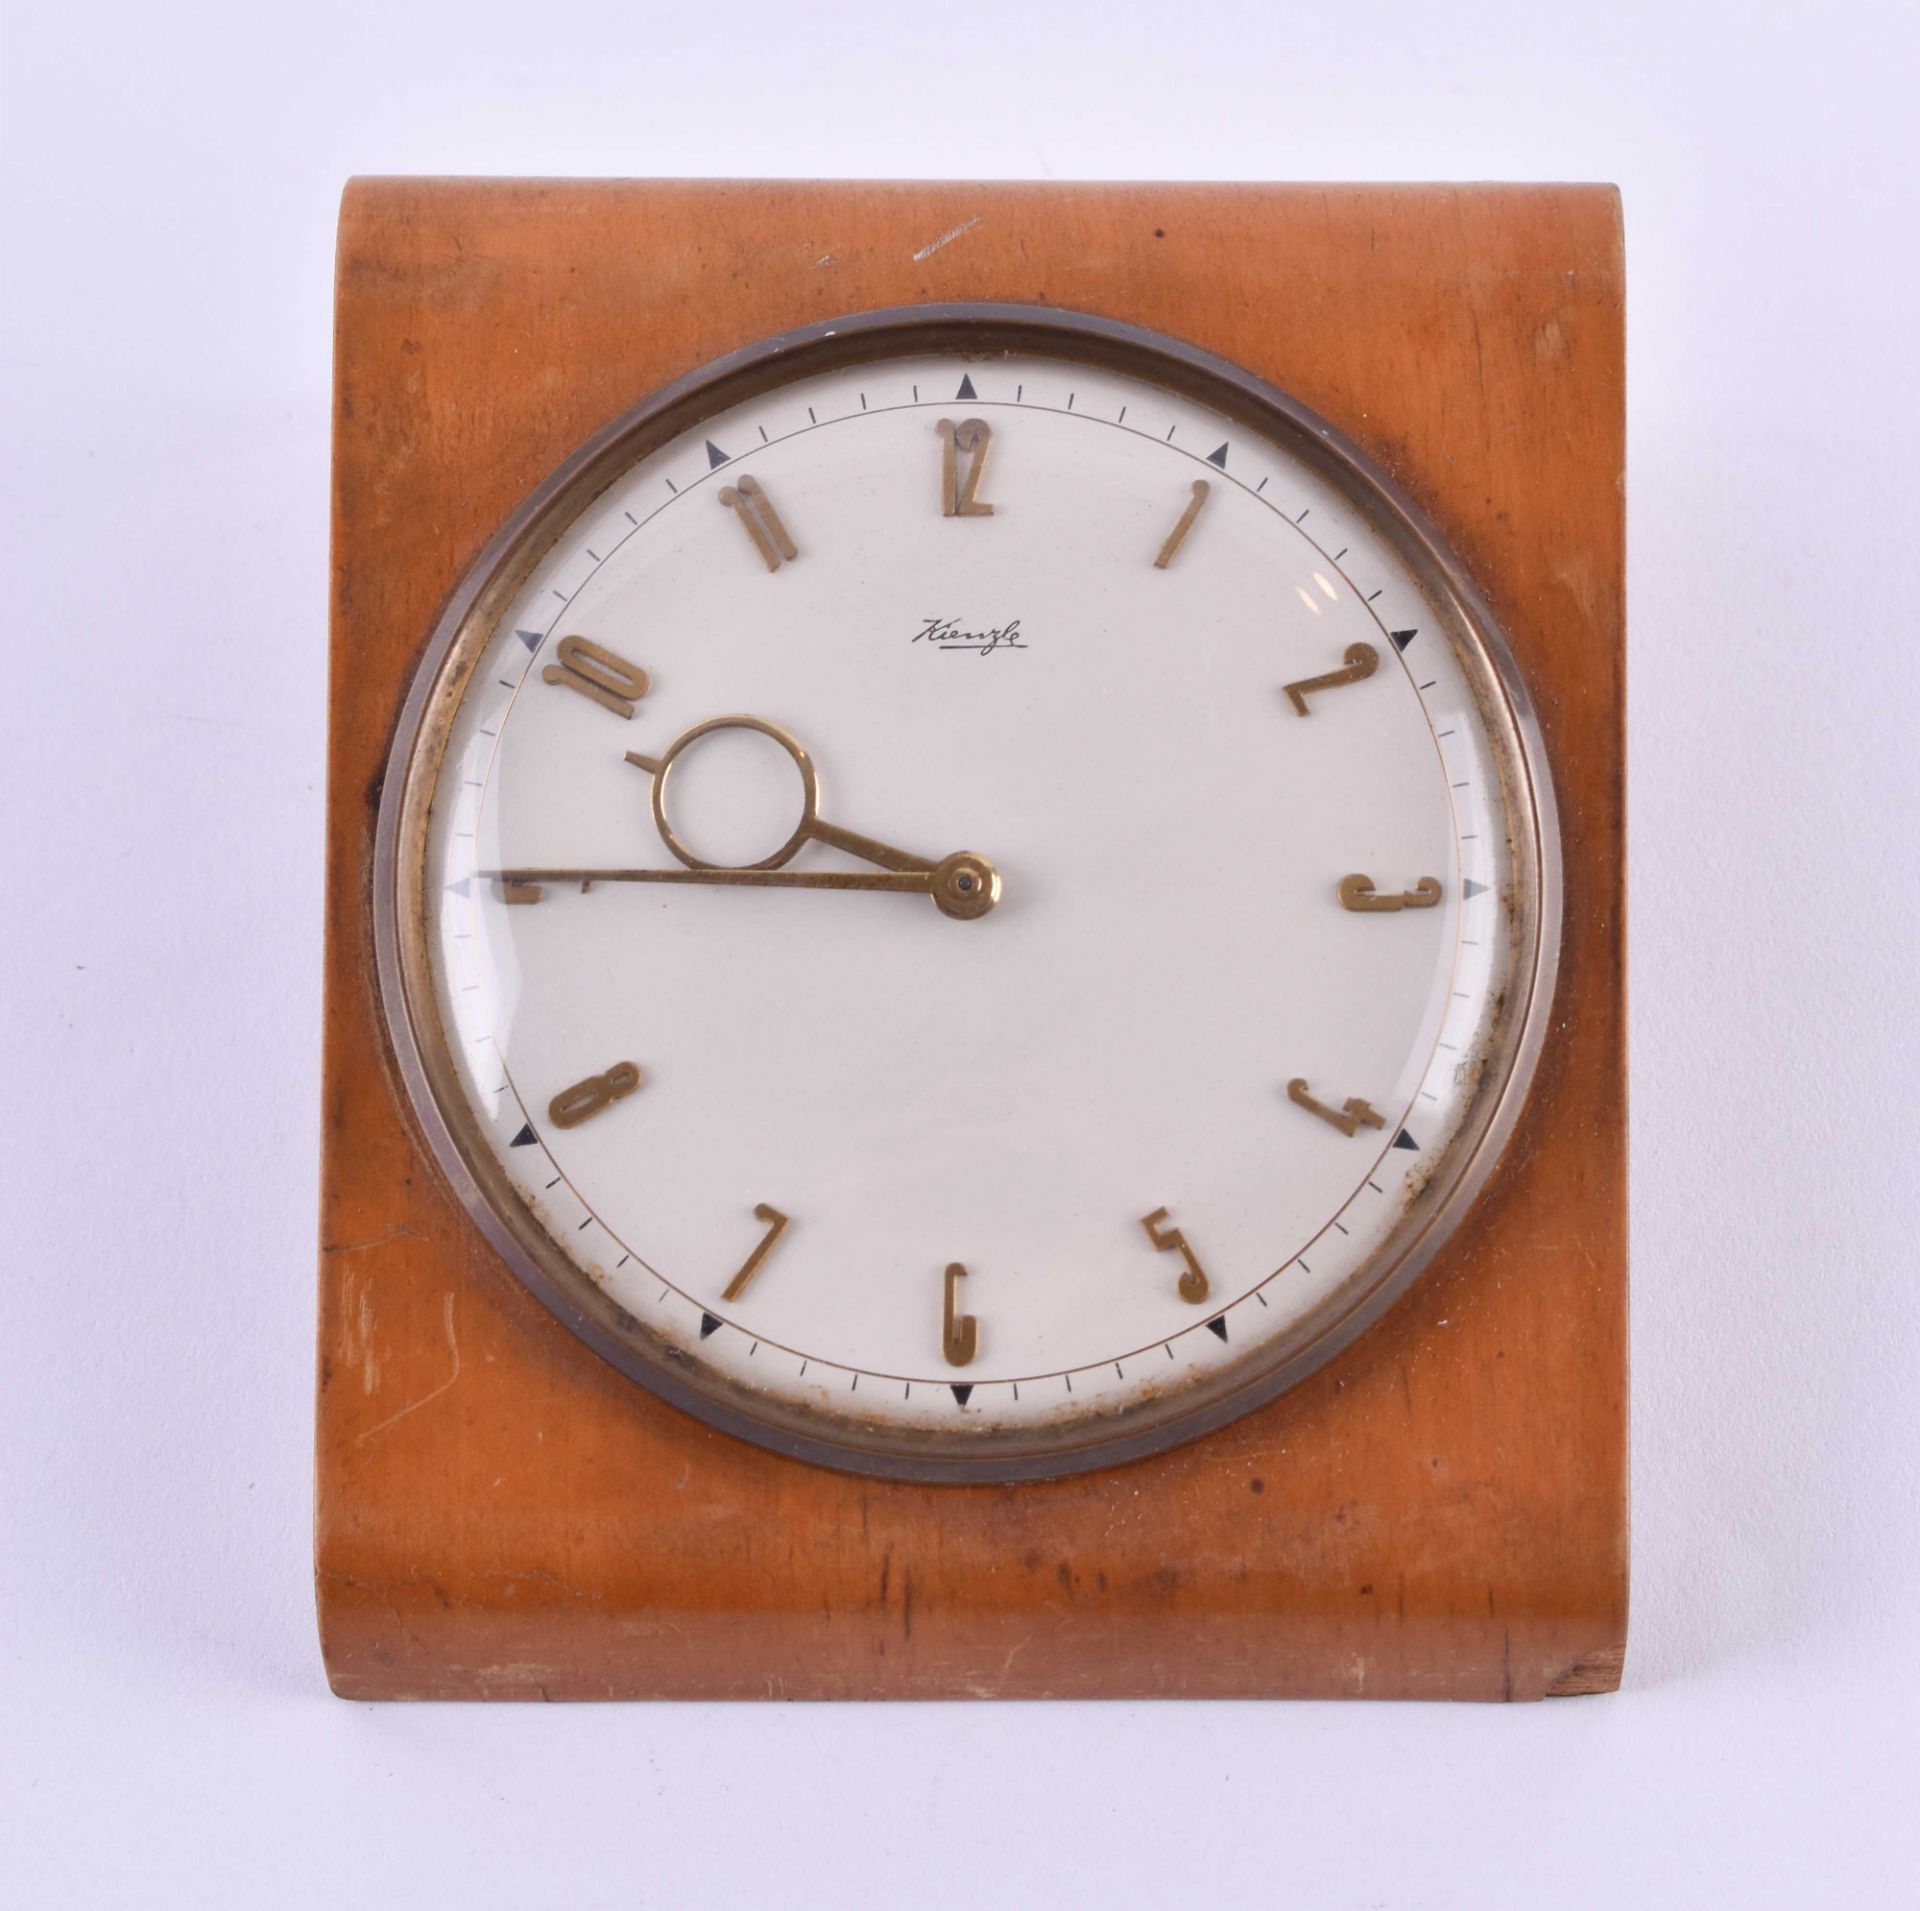 Vintage table clock Kienzle 1950s